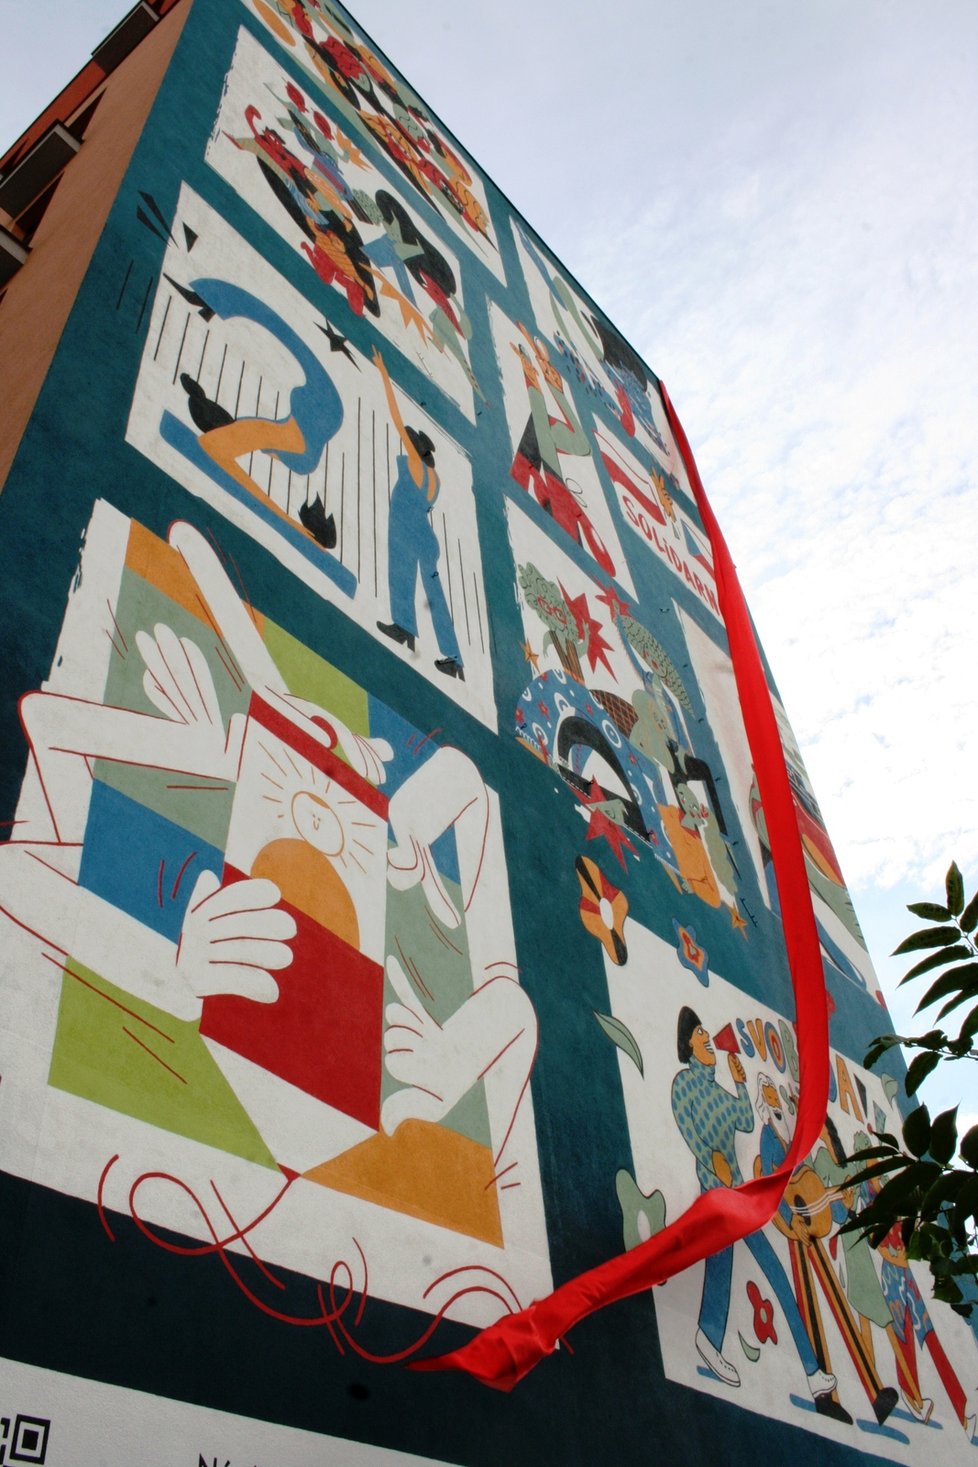 Stěnu domu s pečovatelskou službou v Tusarově ulici zdobí nástěnný mural připomínající 40. výročí polského hnutí Solidarita.